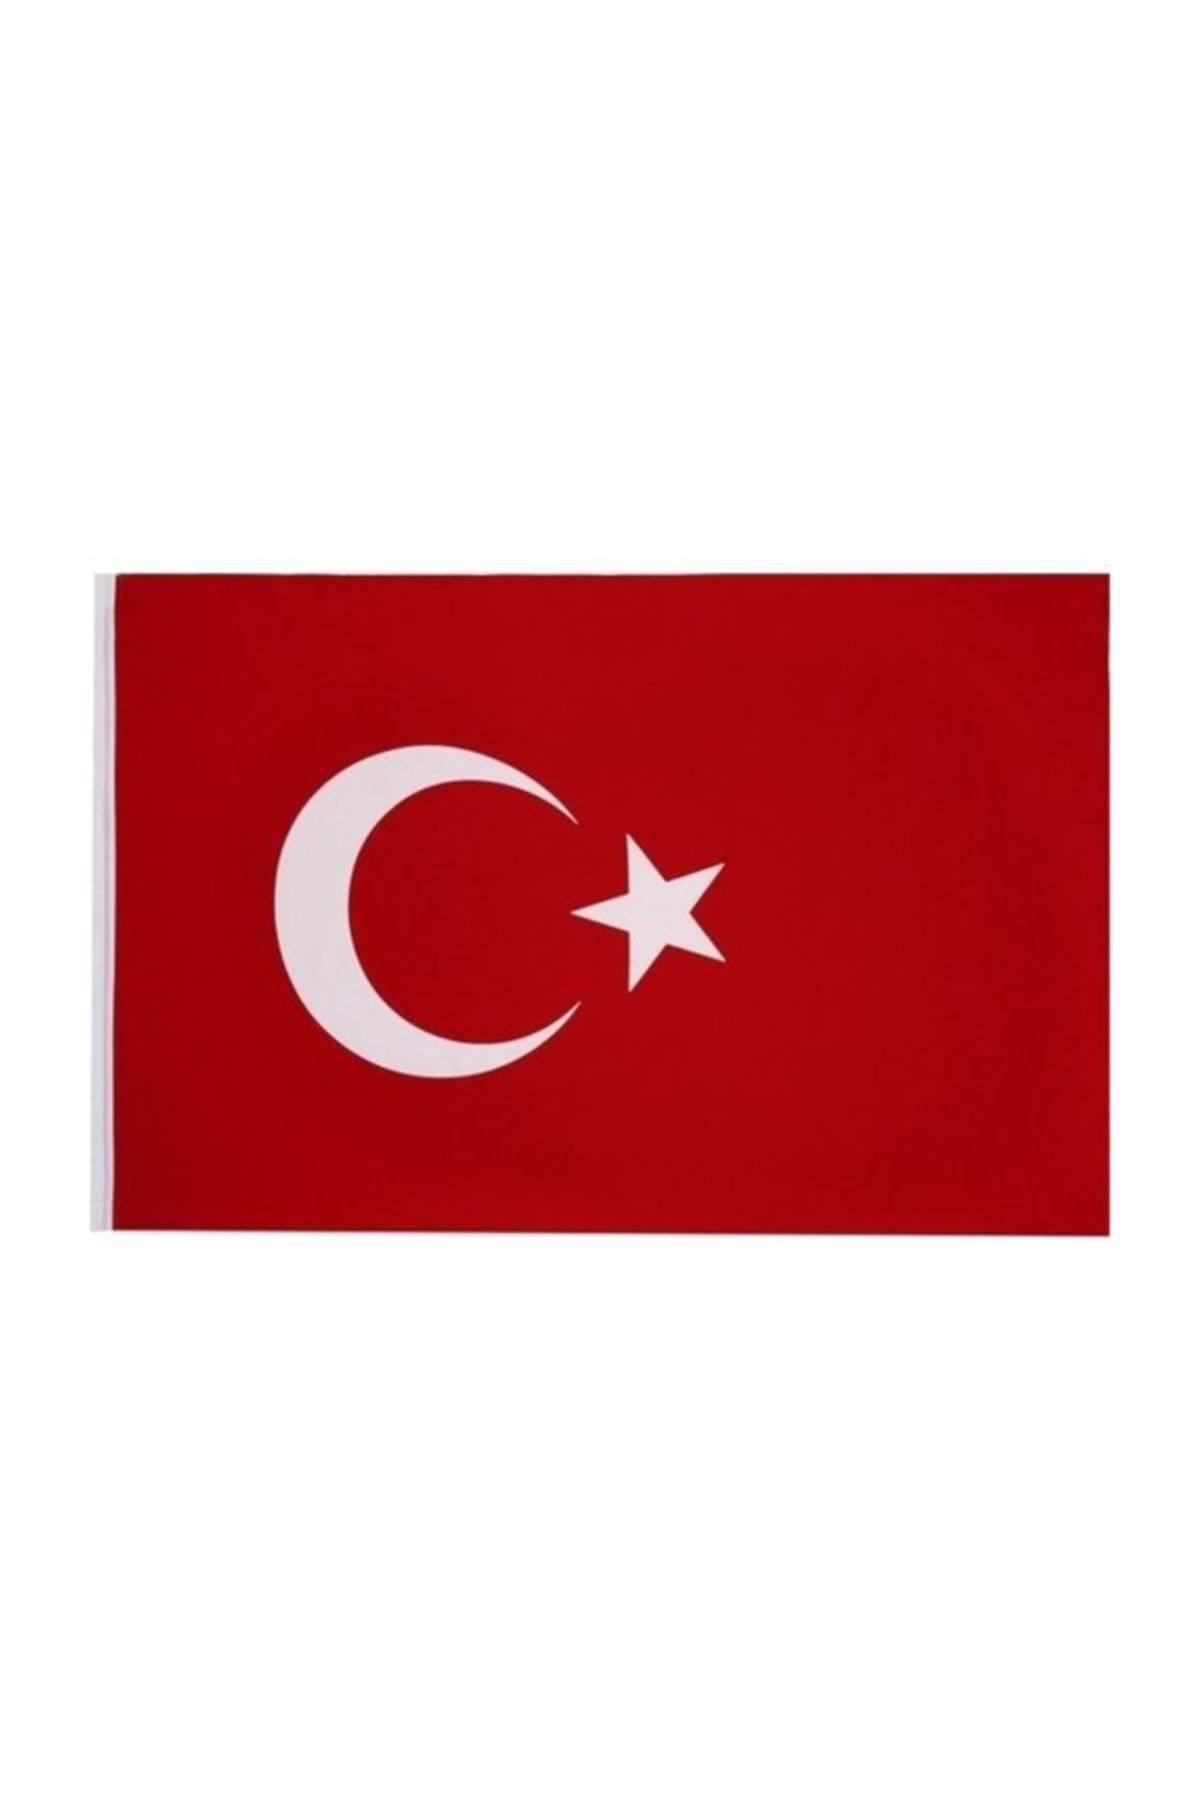 Buket Türk Bayrağı 500x750 cm Özel Raşel Kumaş Bayrak (BKT-129)